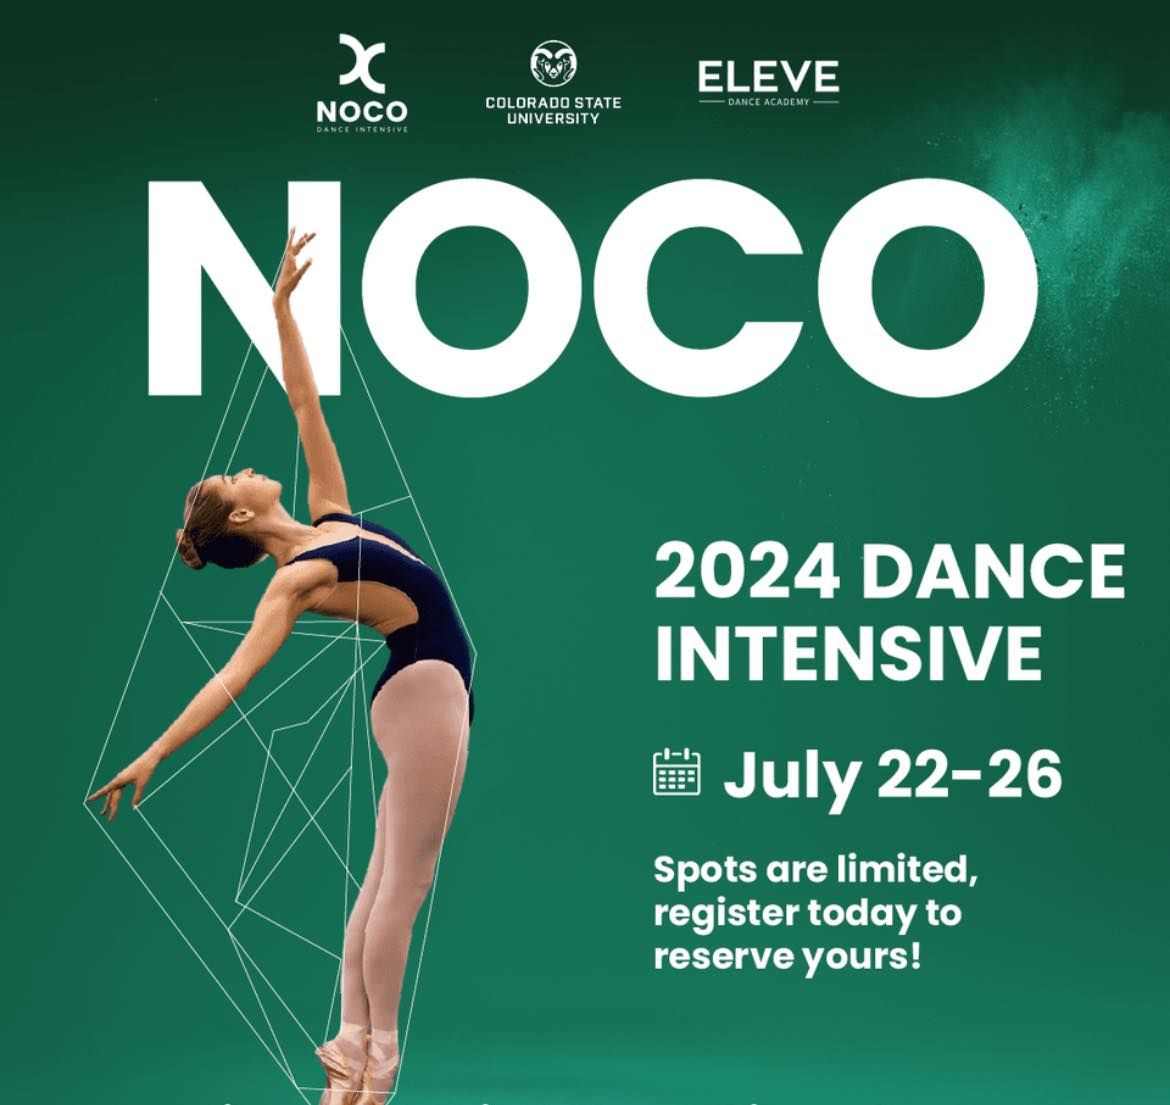 NOCO Dance Intensive 